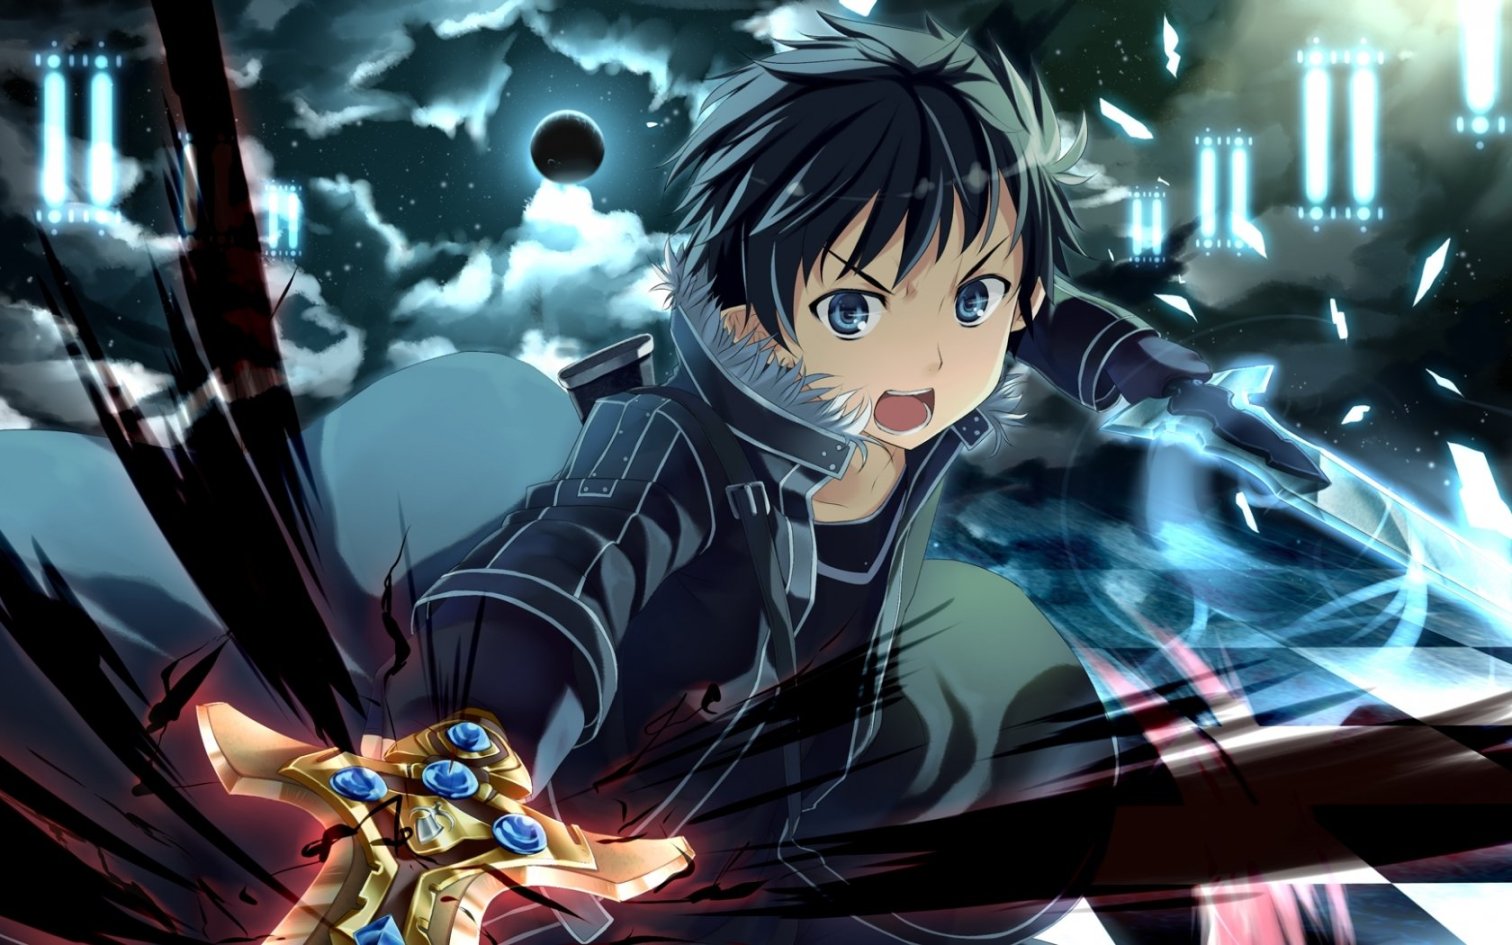 Ảnh của Kirito và Asuna, Sword Art Online-2 anime Kirito